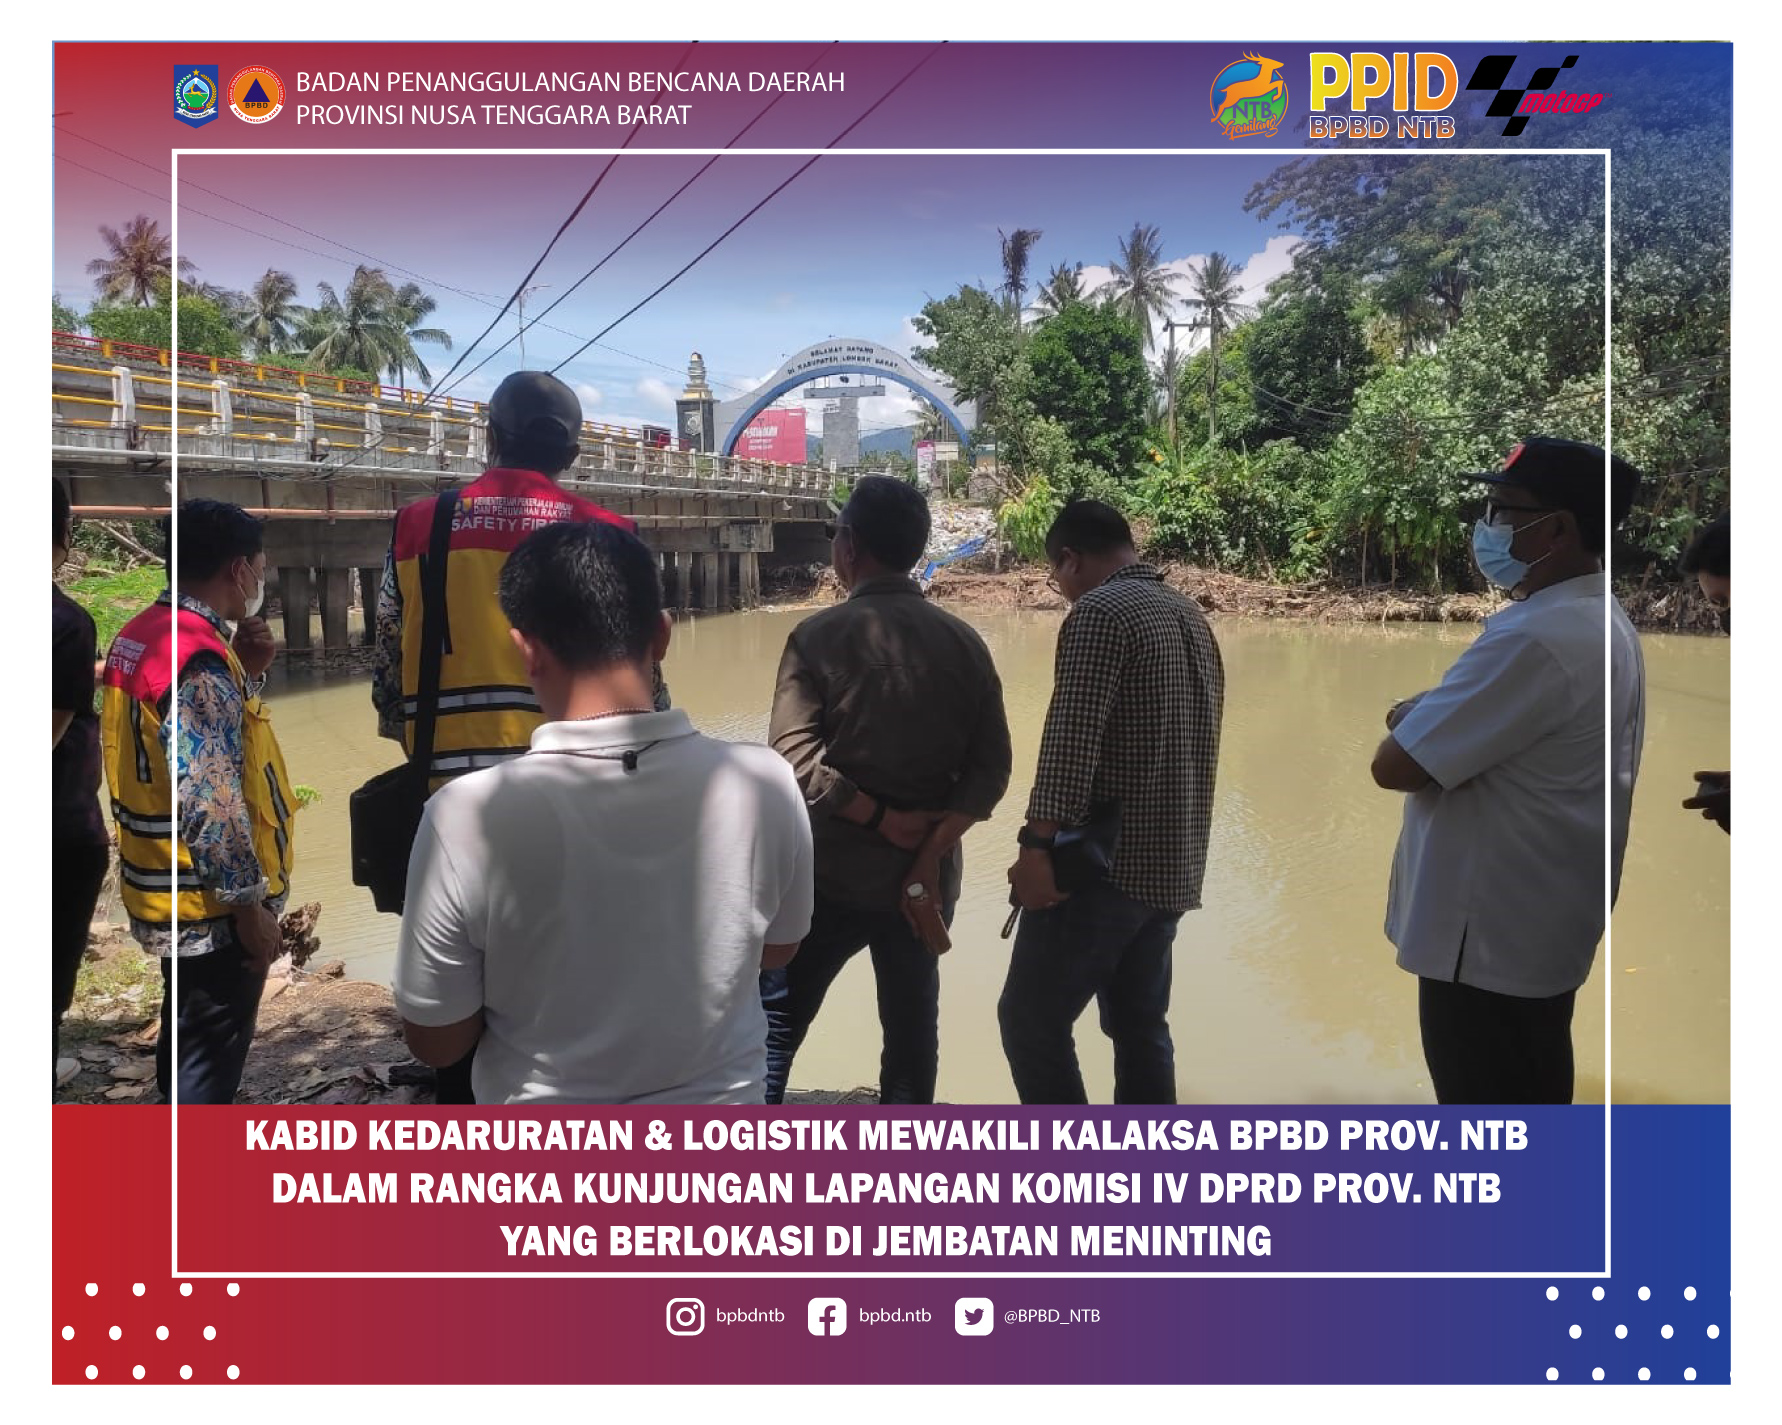 Kabid Kedaruratan & Logistik Mewakili Kalaksa BPBD Provinsi NTB Dalam Rangka Kunjungan Lapangan Komisi IV DPRD Provinsi NTB Yang Berlokasi di Jembatan Meninting